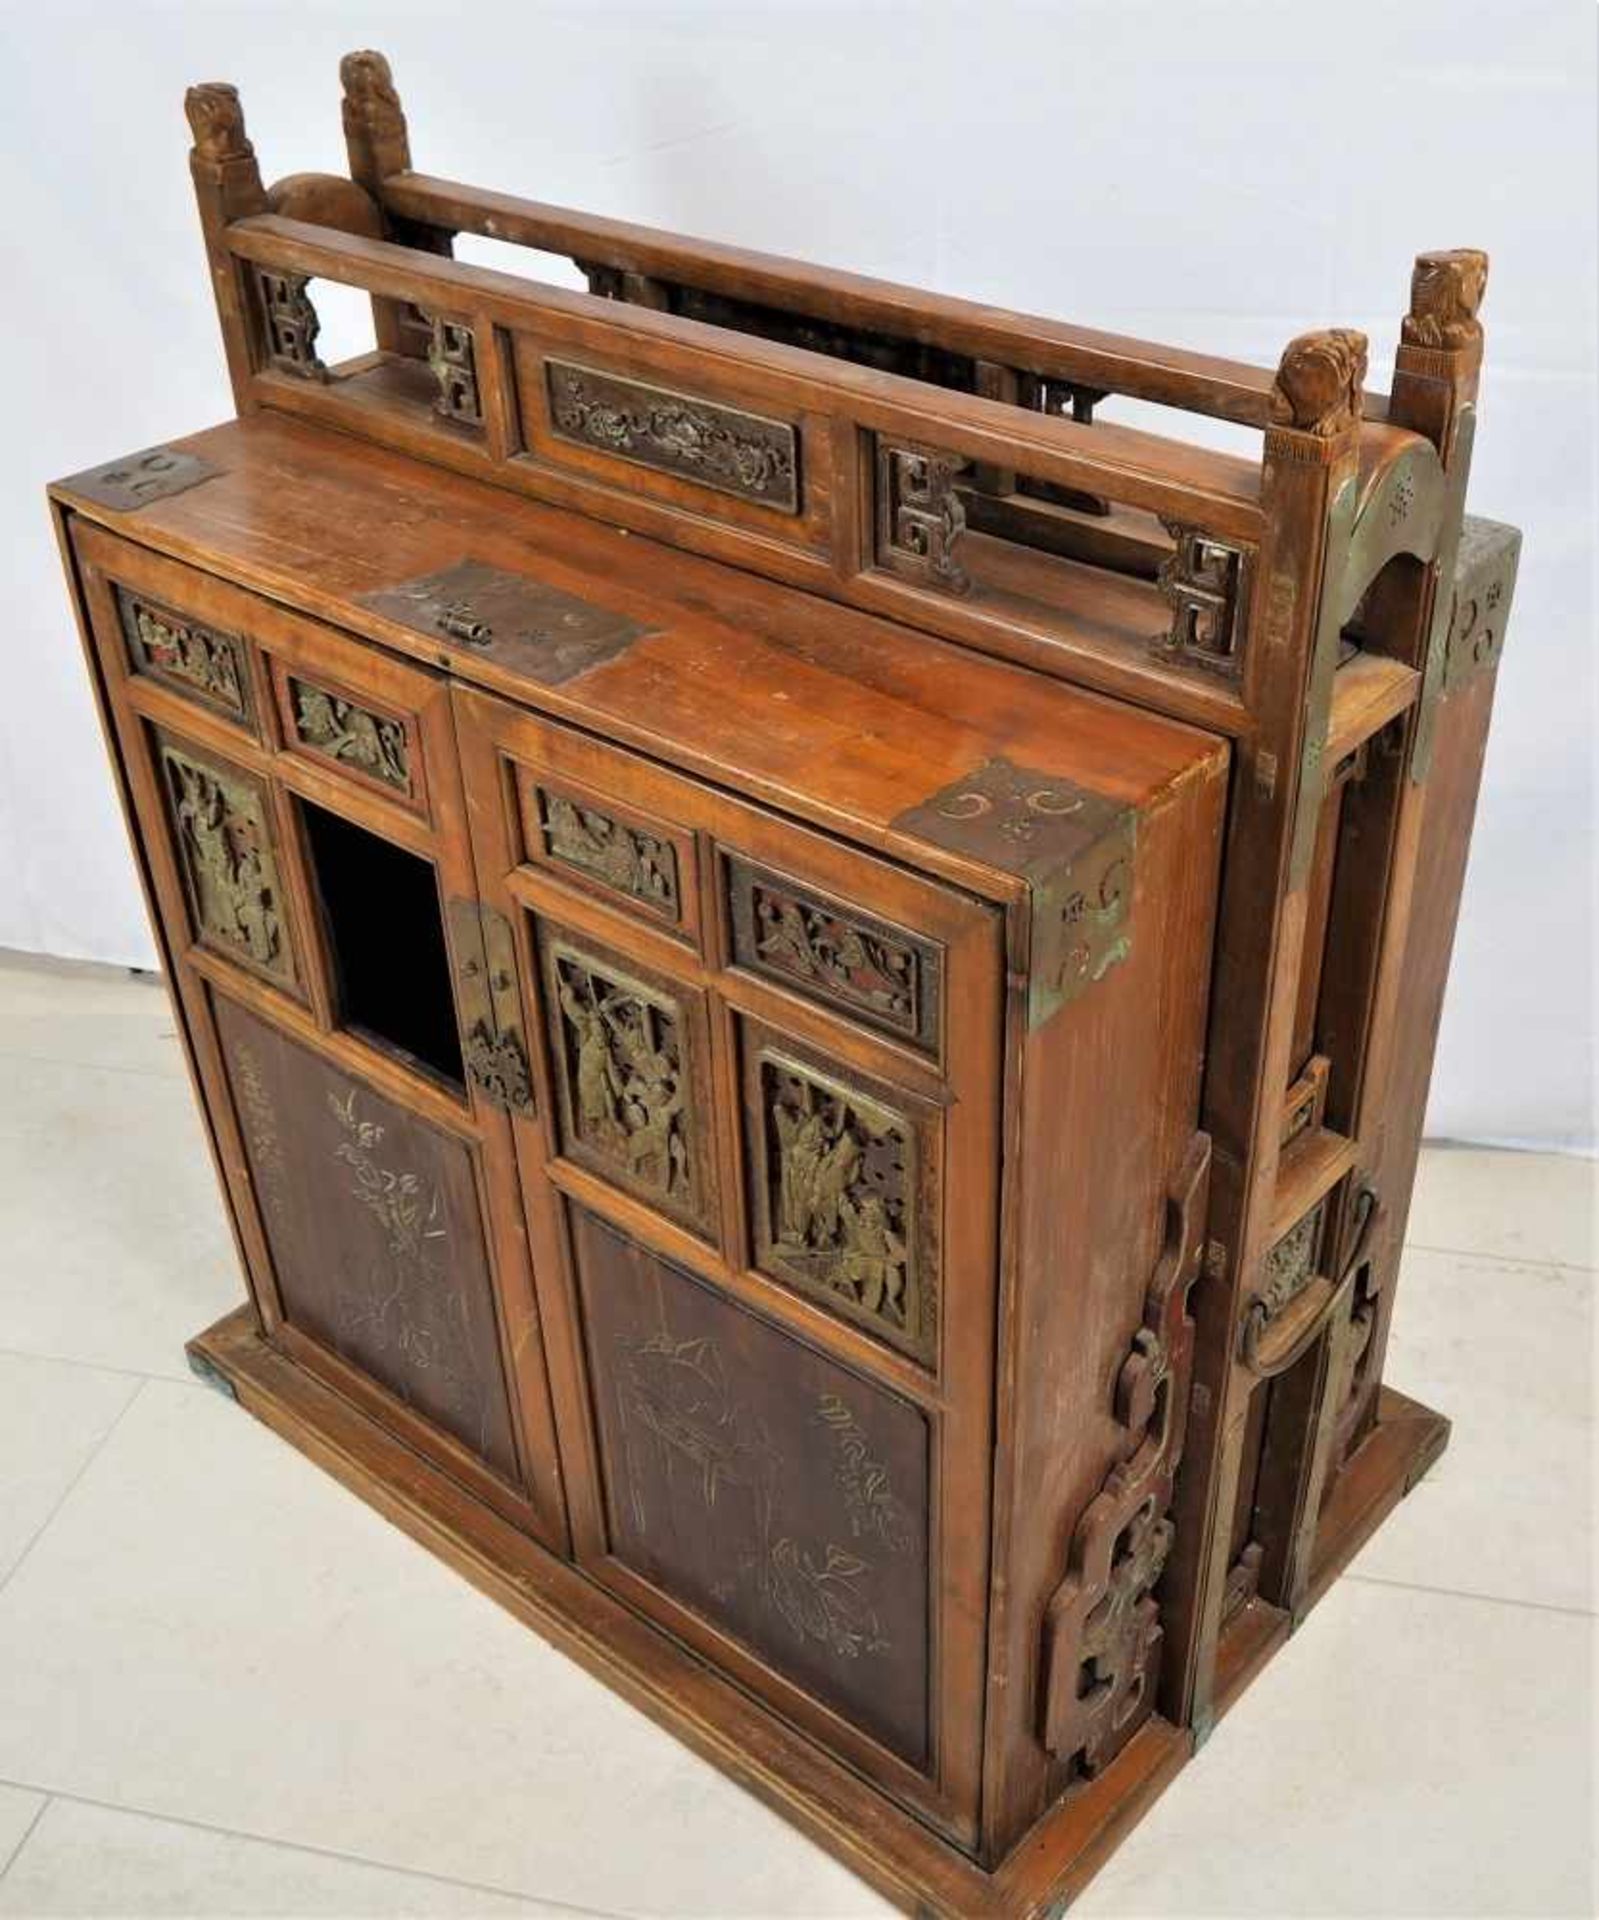 Beistellschrank, China um 1900Aus Holz gefertigt, mit aufwendigen Schnitzereien. Seitlich zwei